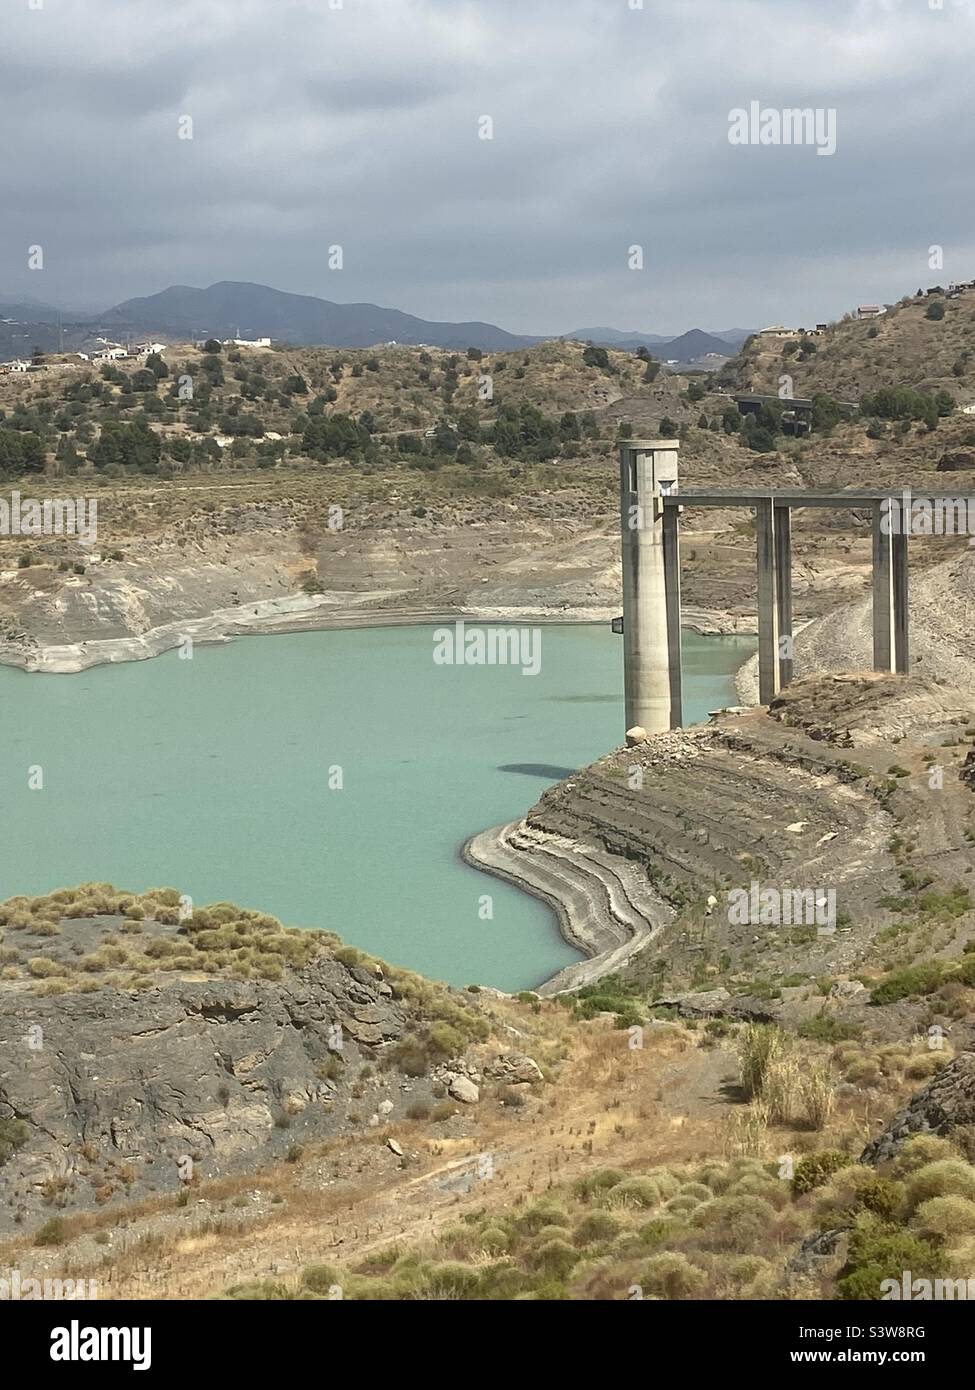 01/08/2022 Lac Vinuela près de Malaga, Espagne qui est seulement 12% plein d'eau en raison des conditions de sécheresse. Banque D'Images